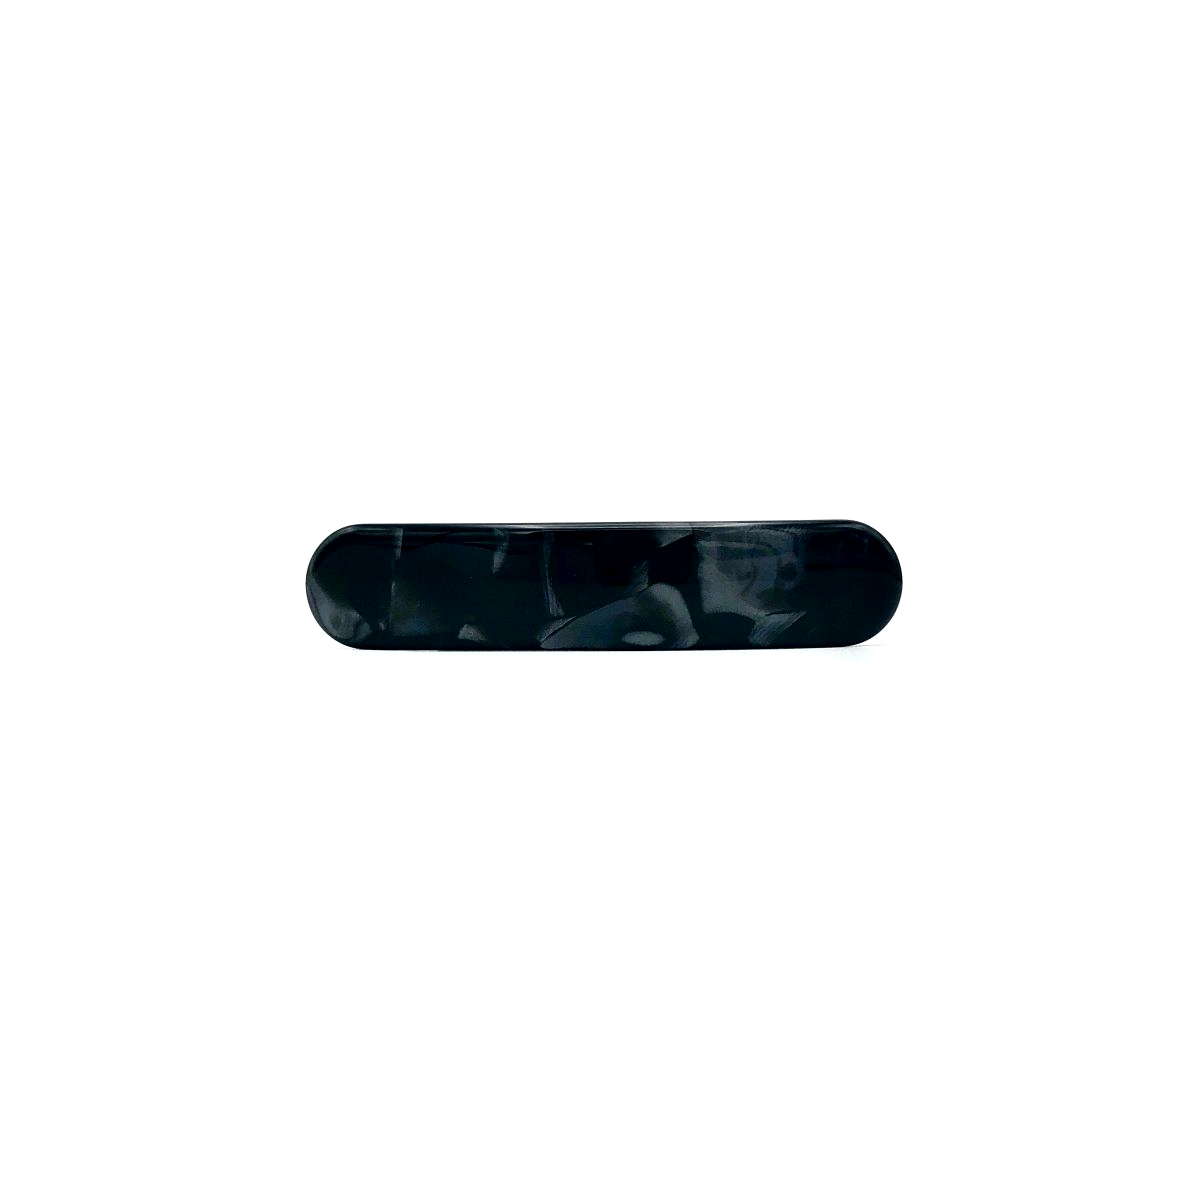 Haarspange schwarz/silbergrau - klein, paralelloval - 7,7 cm